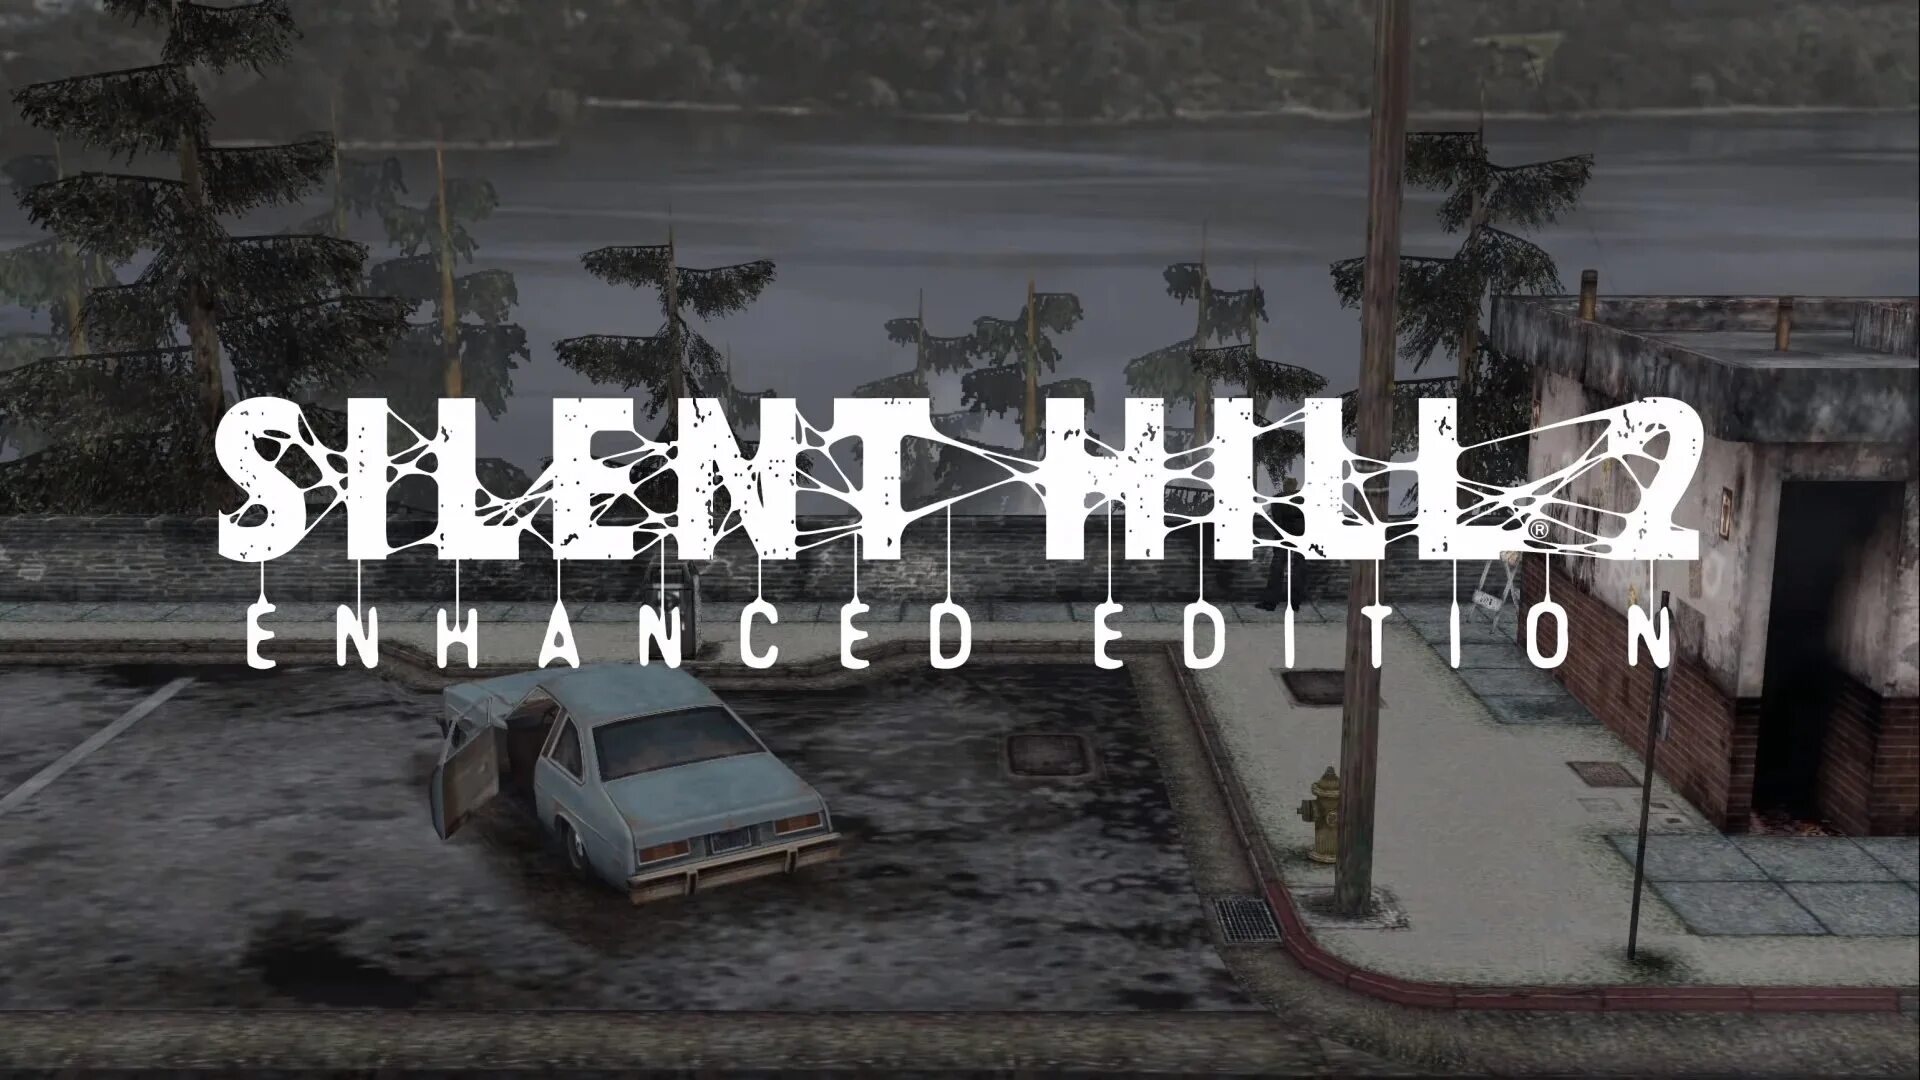 Silent hill director cut. Silent Hill 2 Director's Cut New Edition: enhanced Edition.